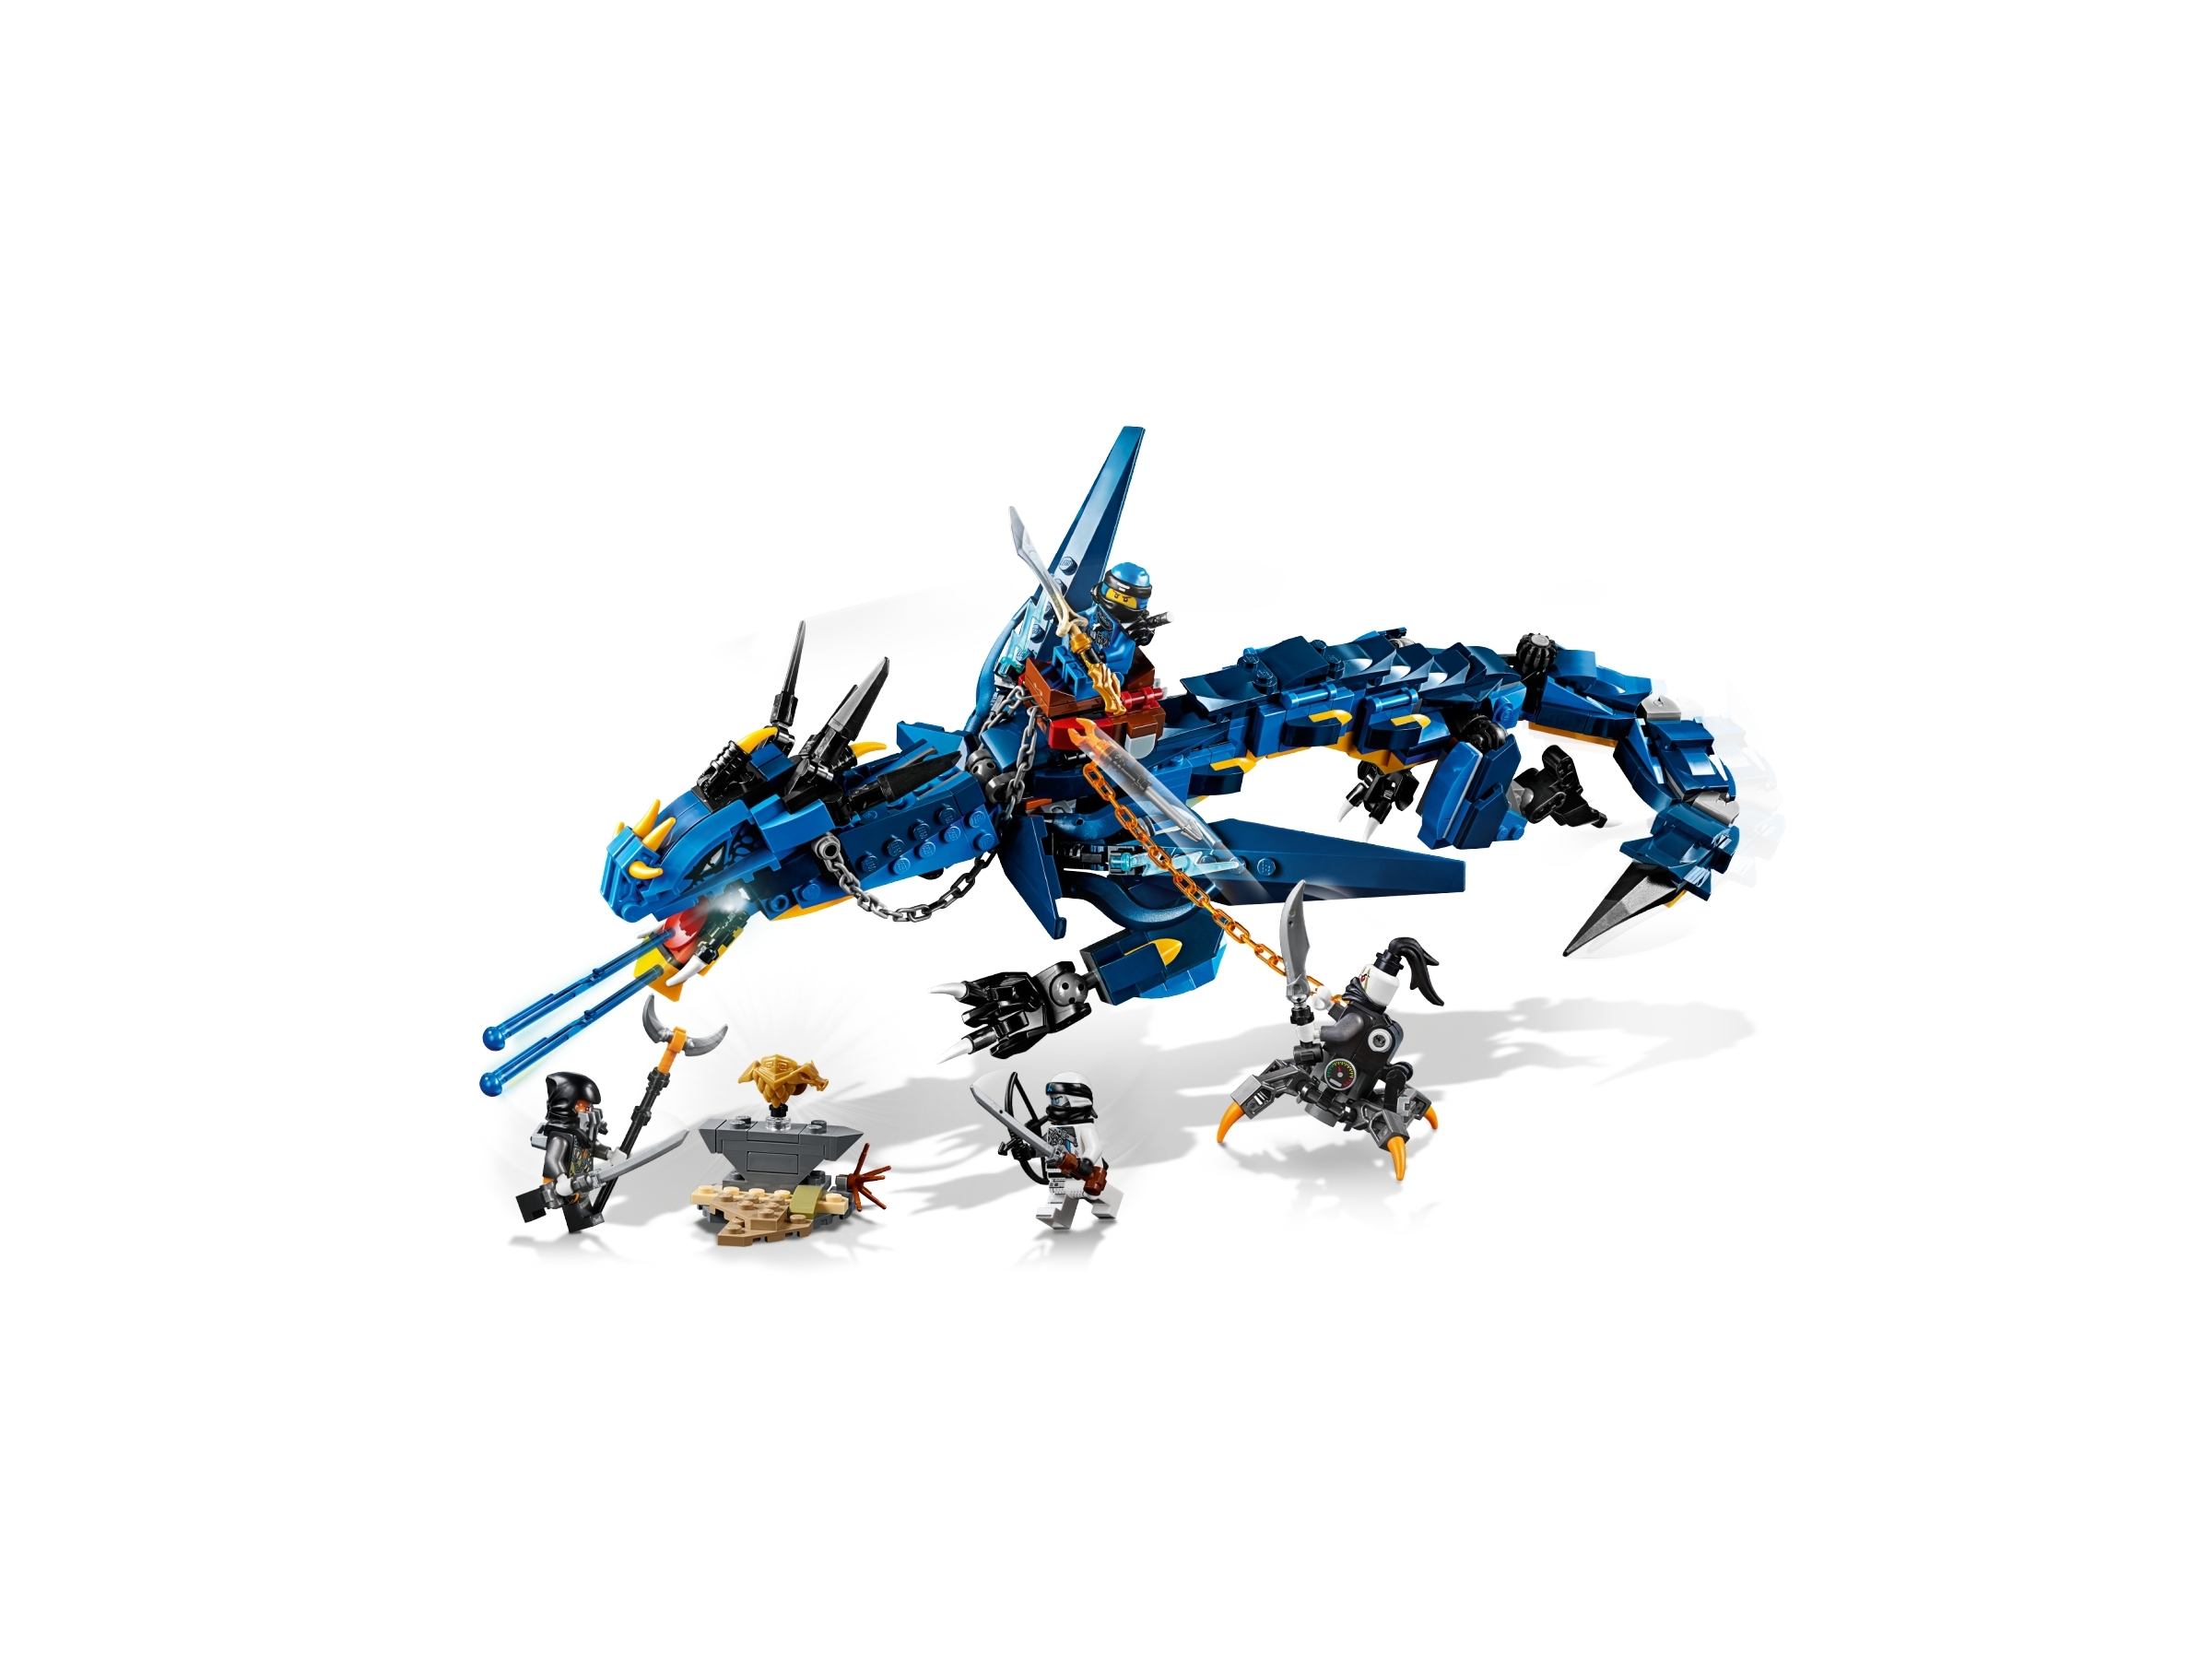 Stormbringer 70652 | | online at the Official LEGO® Shop